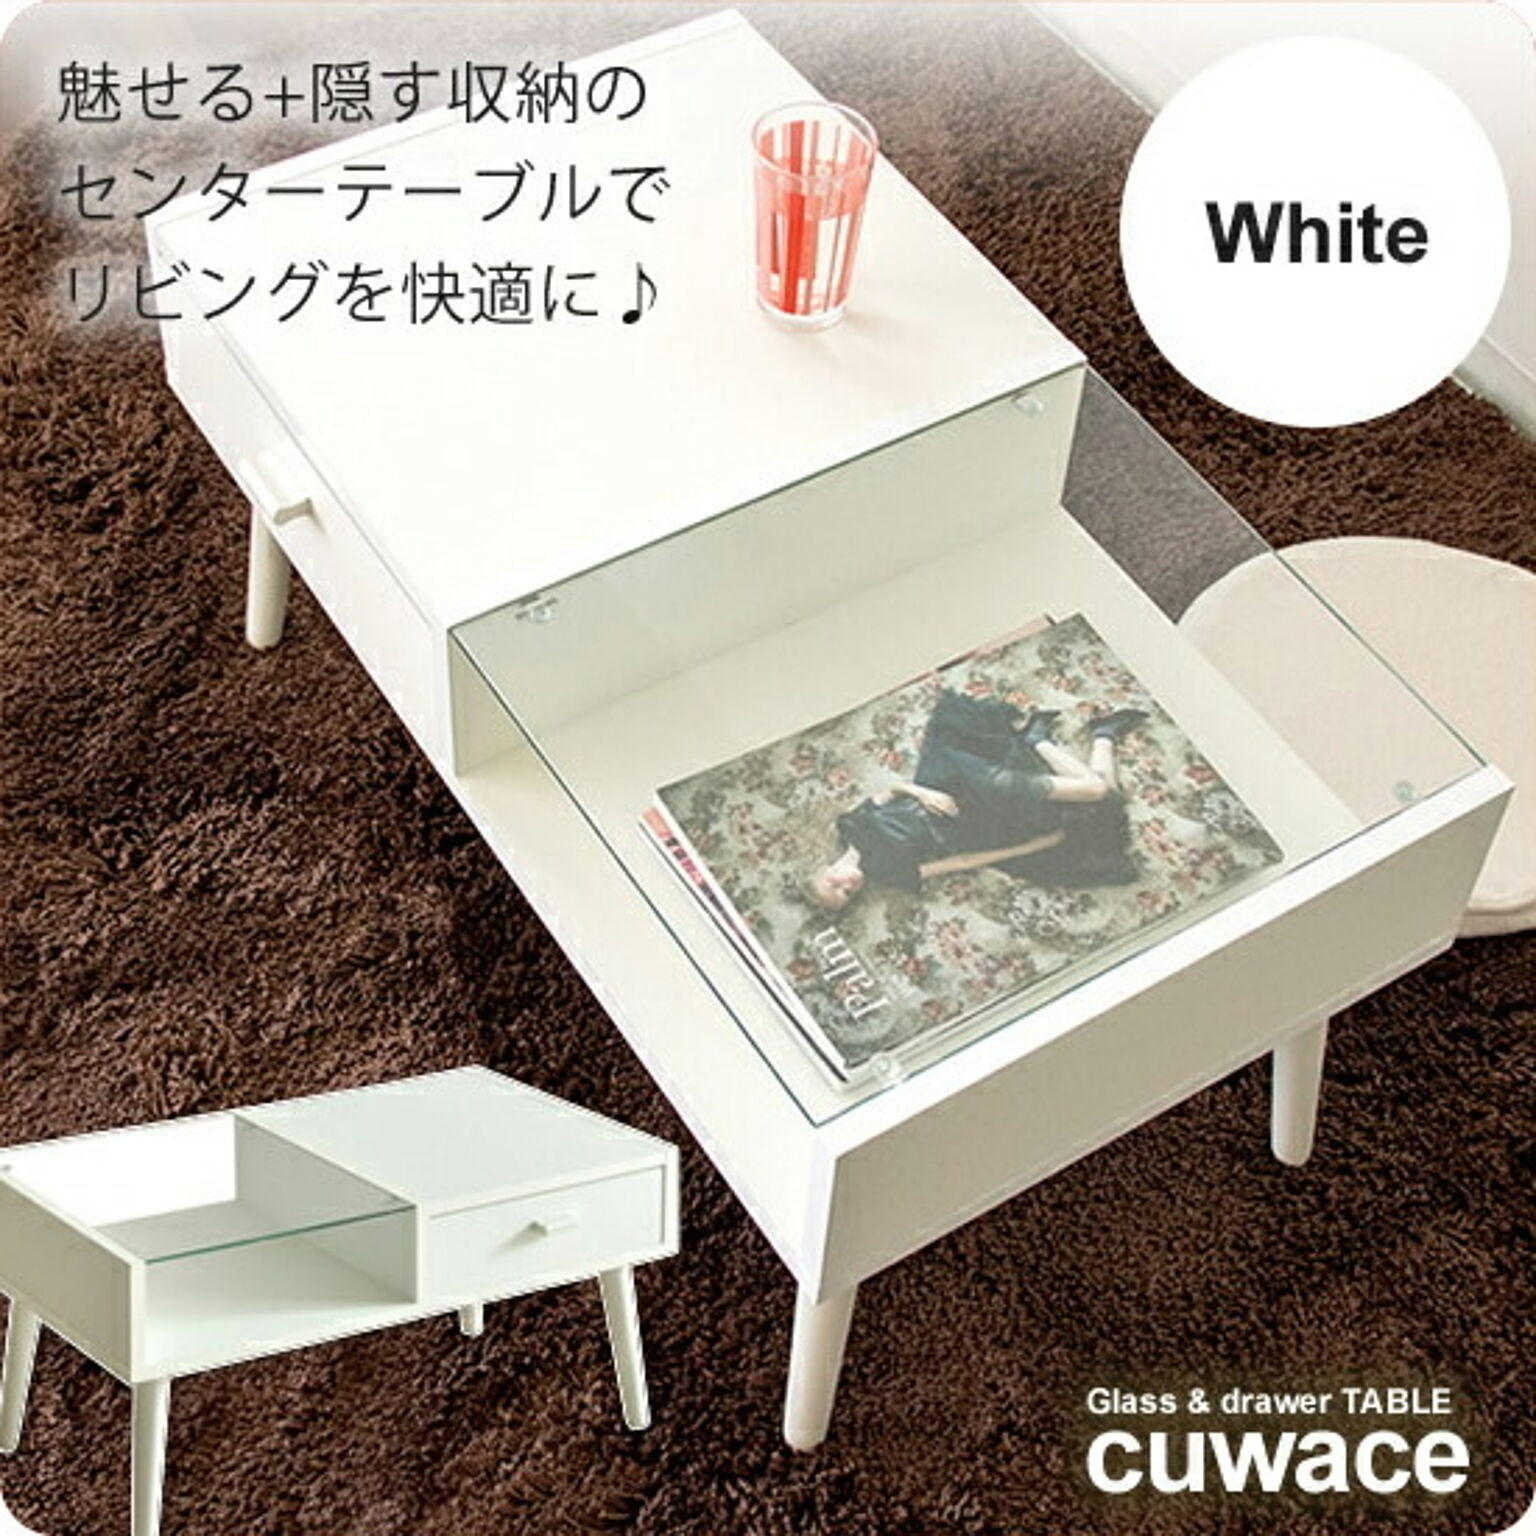 cuwace アーバン ガラス製コーヒーテーブル, ホワイト